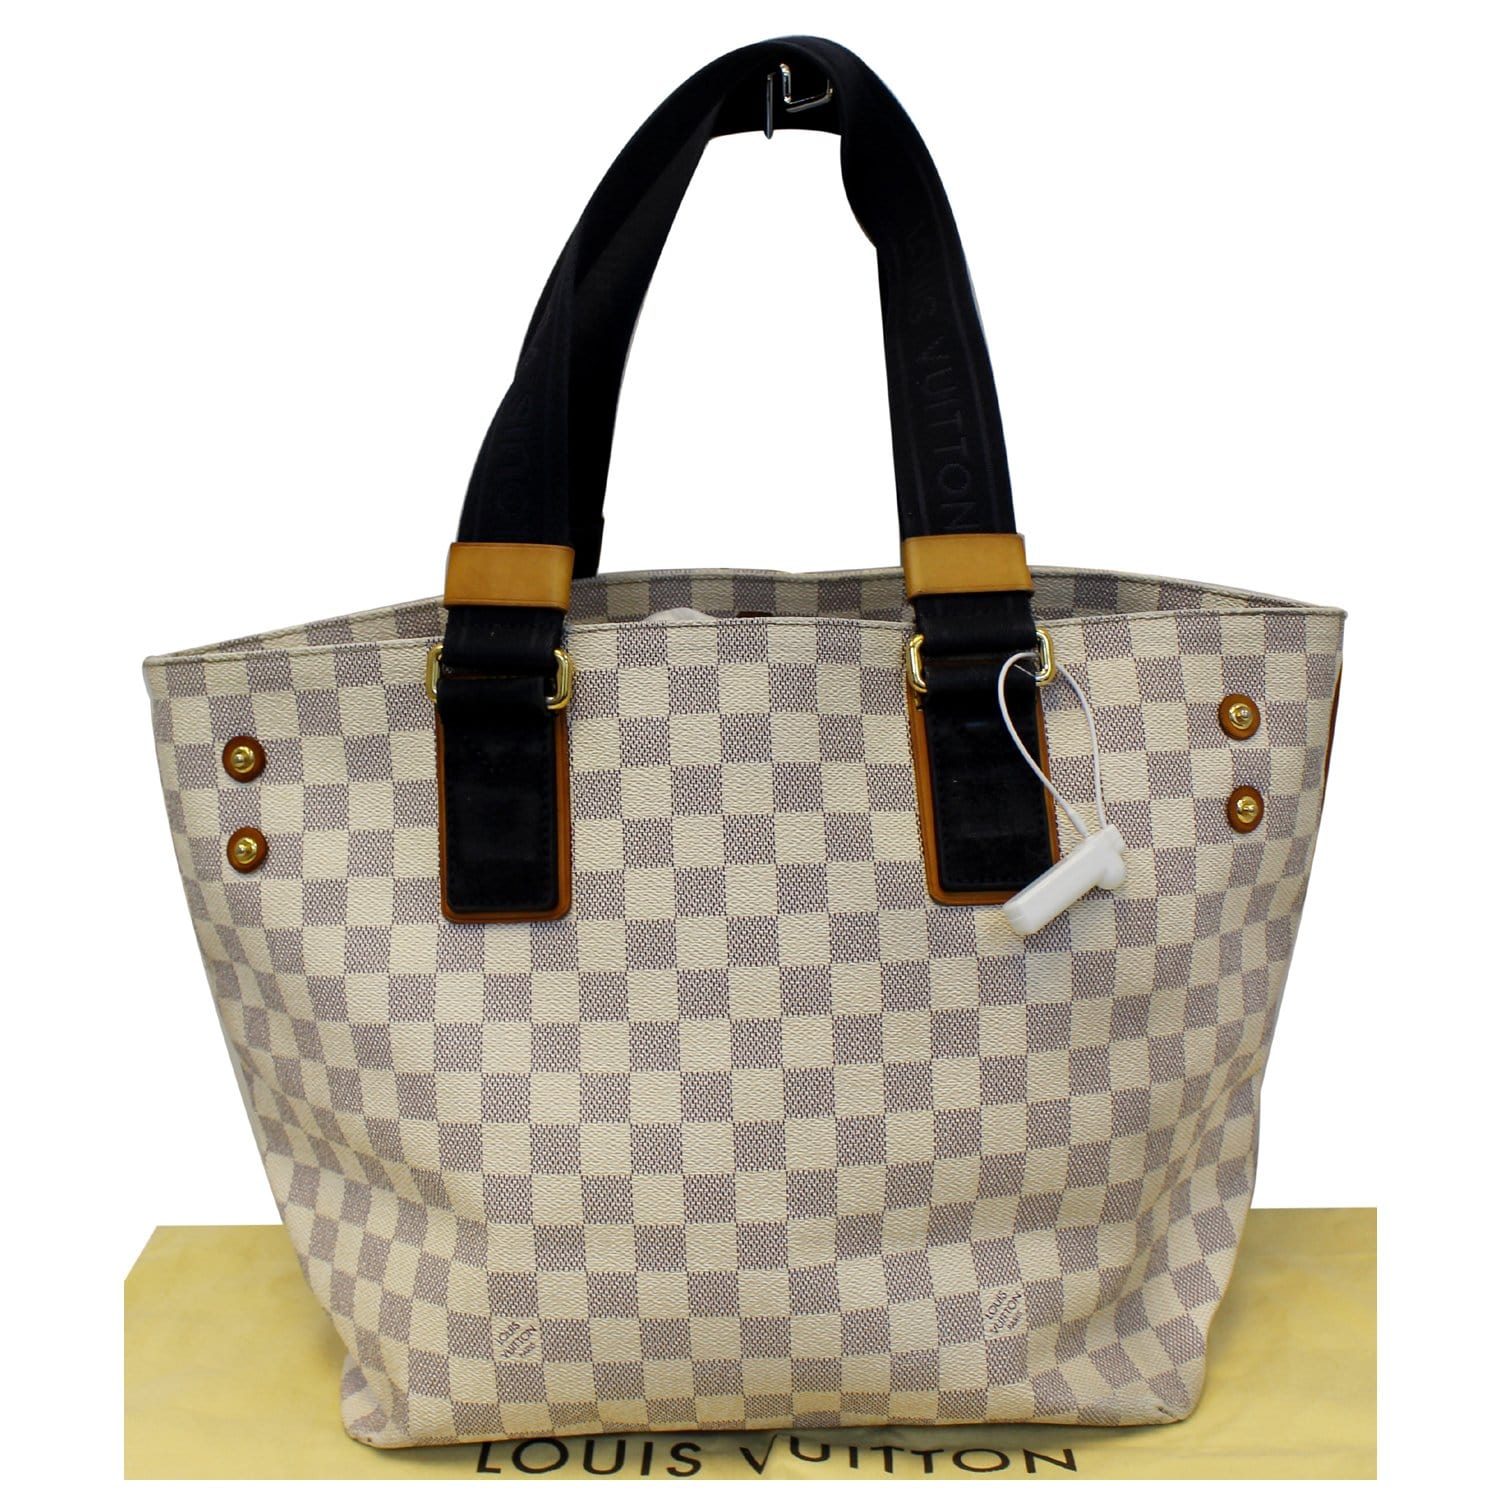 Buy [Bag] LOUIS VUITTON Louis Vuitton Damier Olaf PM Shoulder Bag Diagonal  Shoulder Pochette N41442 from Japan - Buy authentic Plus exclusive items  from Japan